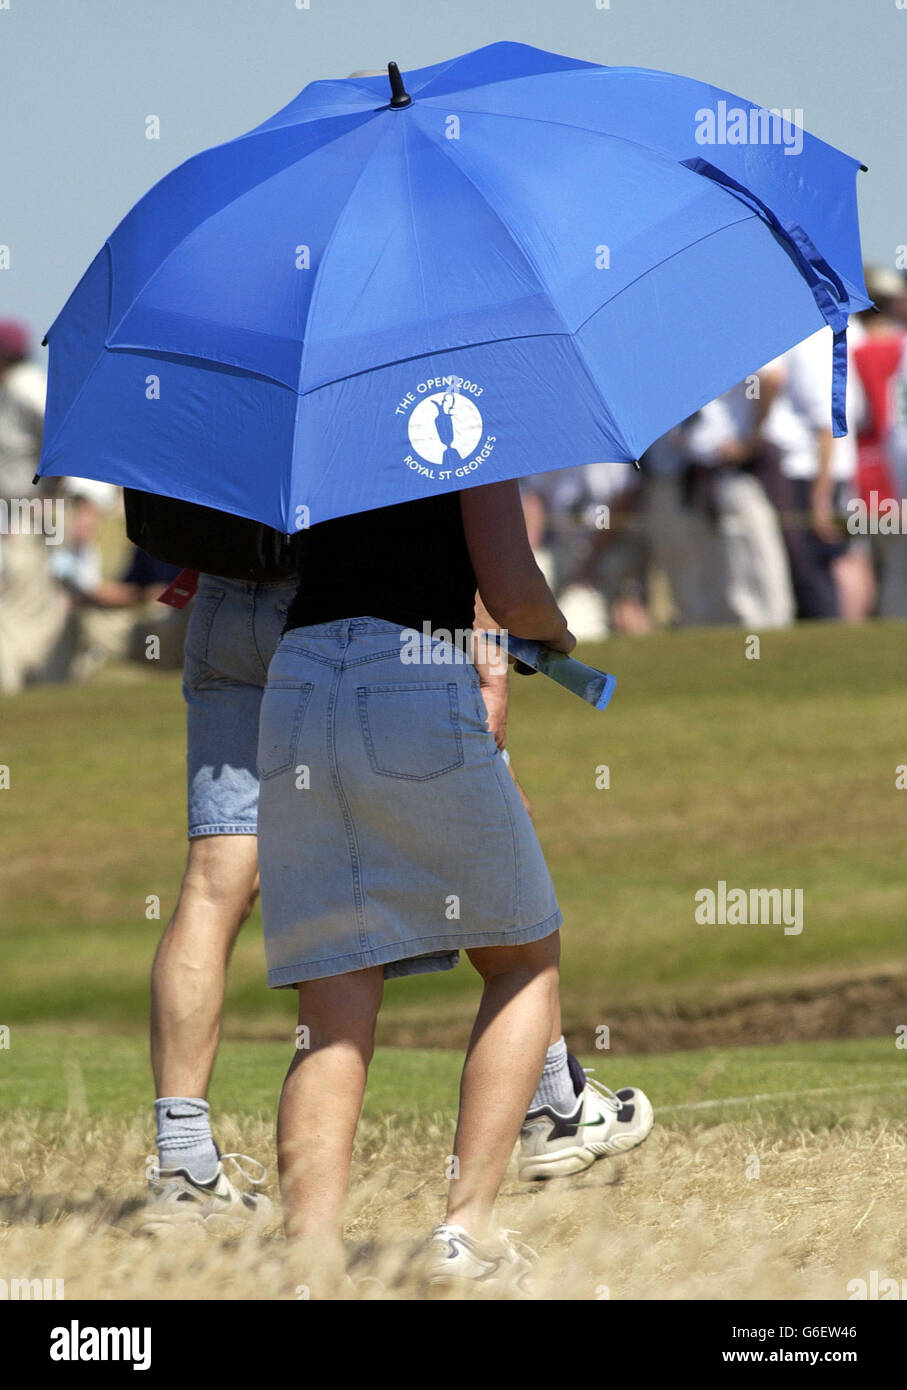 POUR NE PAS UTILISER DE TÉLÉPHONE MOBILE : les spectateurs utilisent un parapluie  de golf pour se protéger du soleil brûlant , lors de la troisième partie du  132e Open Championship au